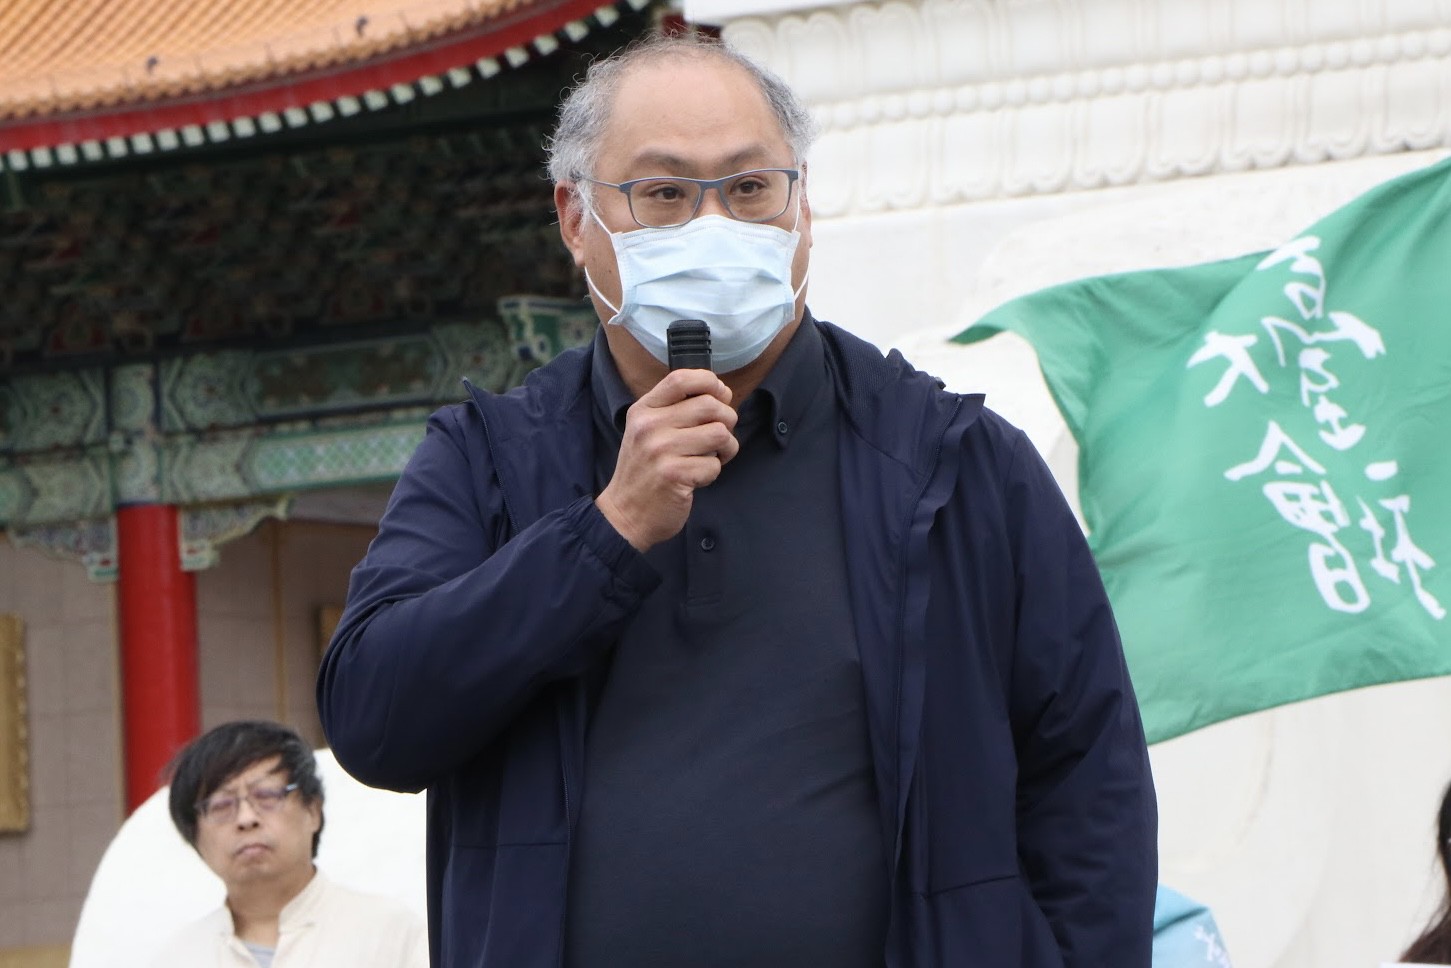 曾遭中國監禁的台灣NGO工作者李明哲也現身活動現場。